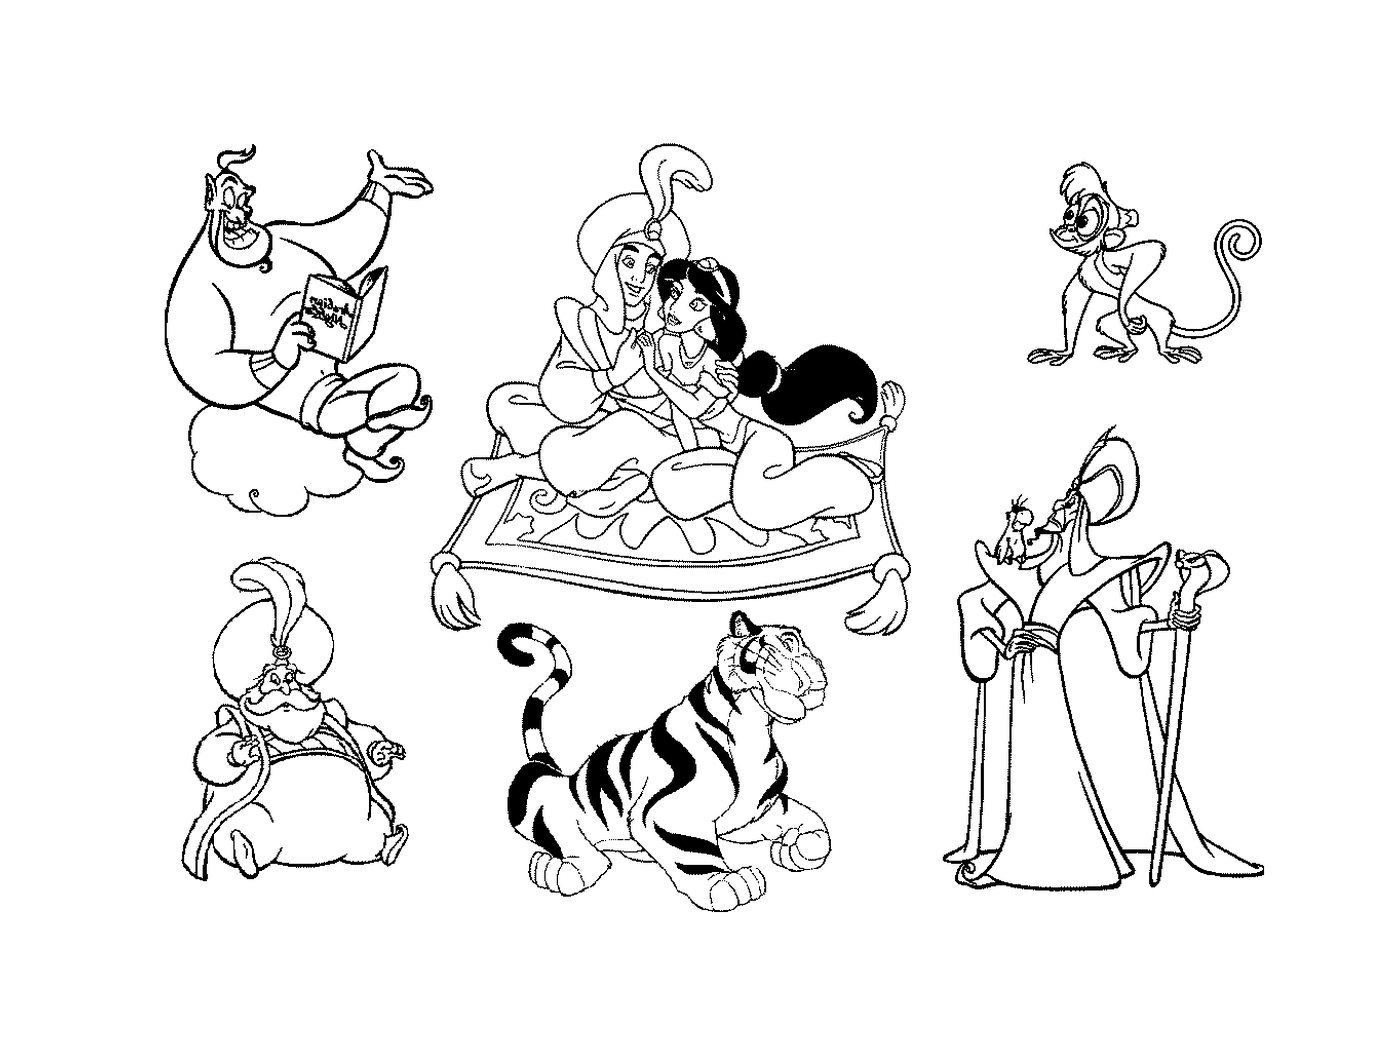  Un gruppo di personaggi dei cartoni animati 